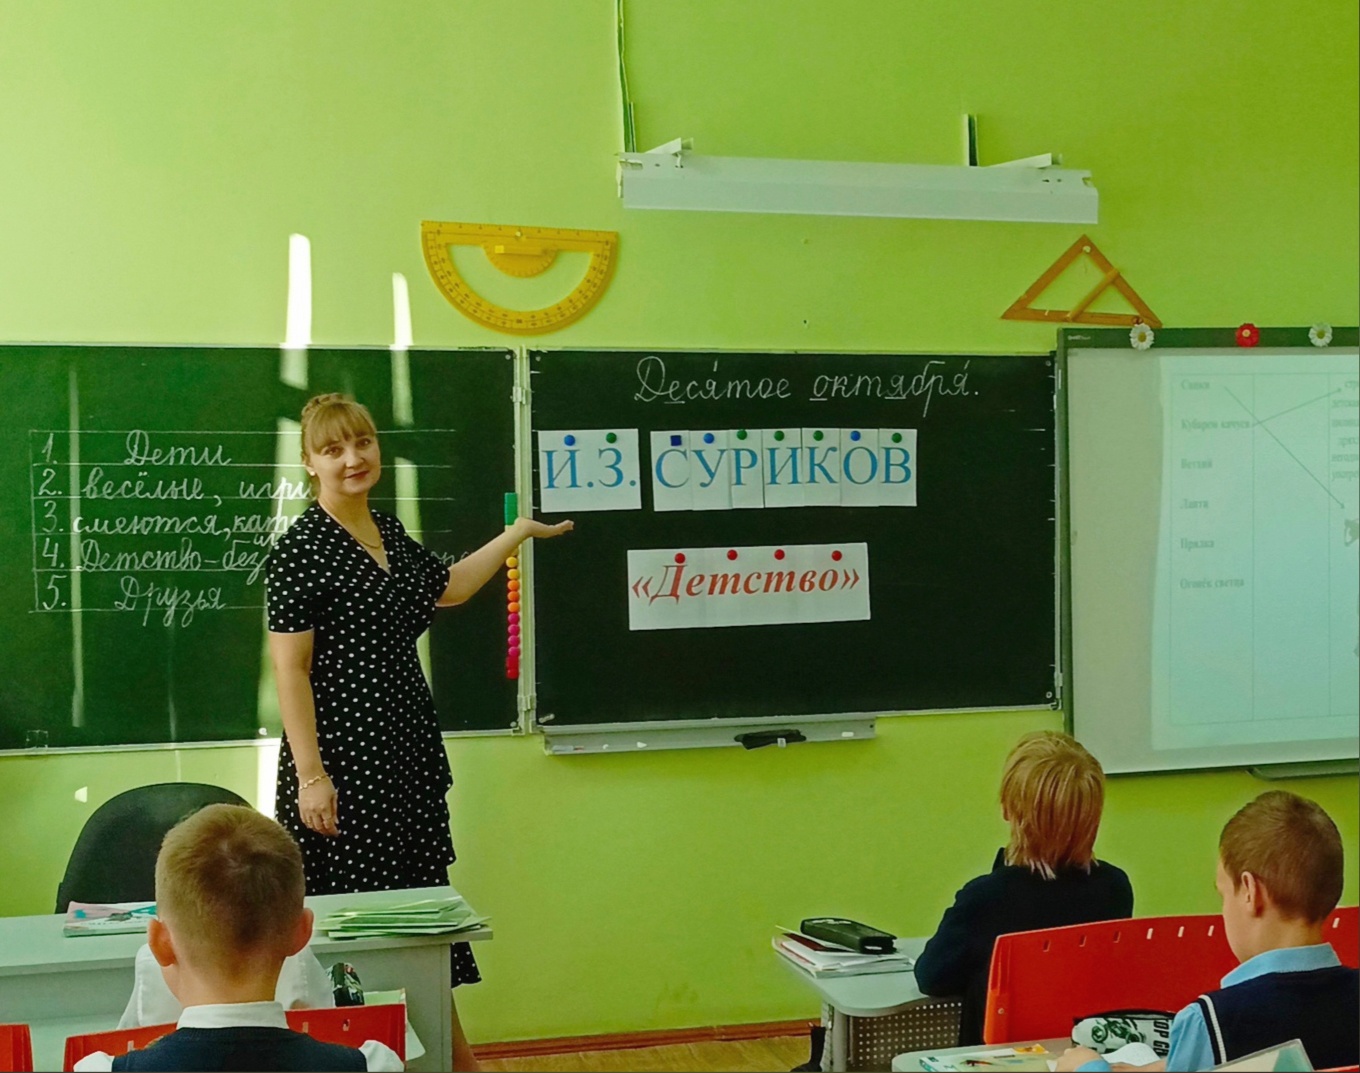 Подробнее о статье Педагог школы №1 Татьяна Кузнецова провела свой открытый урок для наставляемого по теме: «Детство».